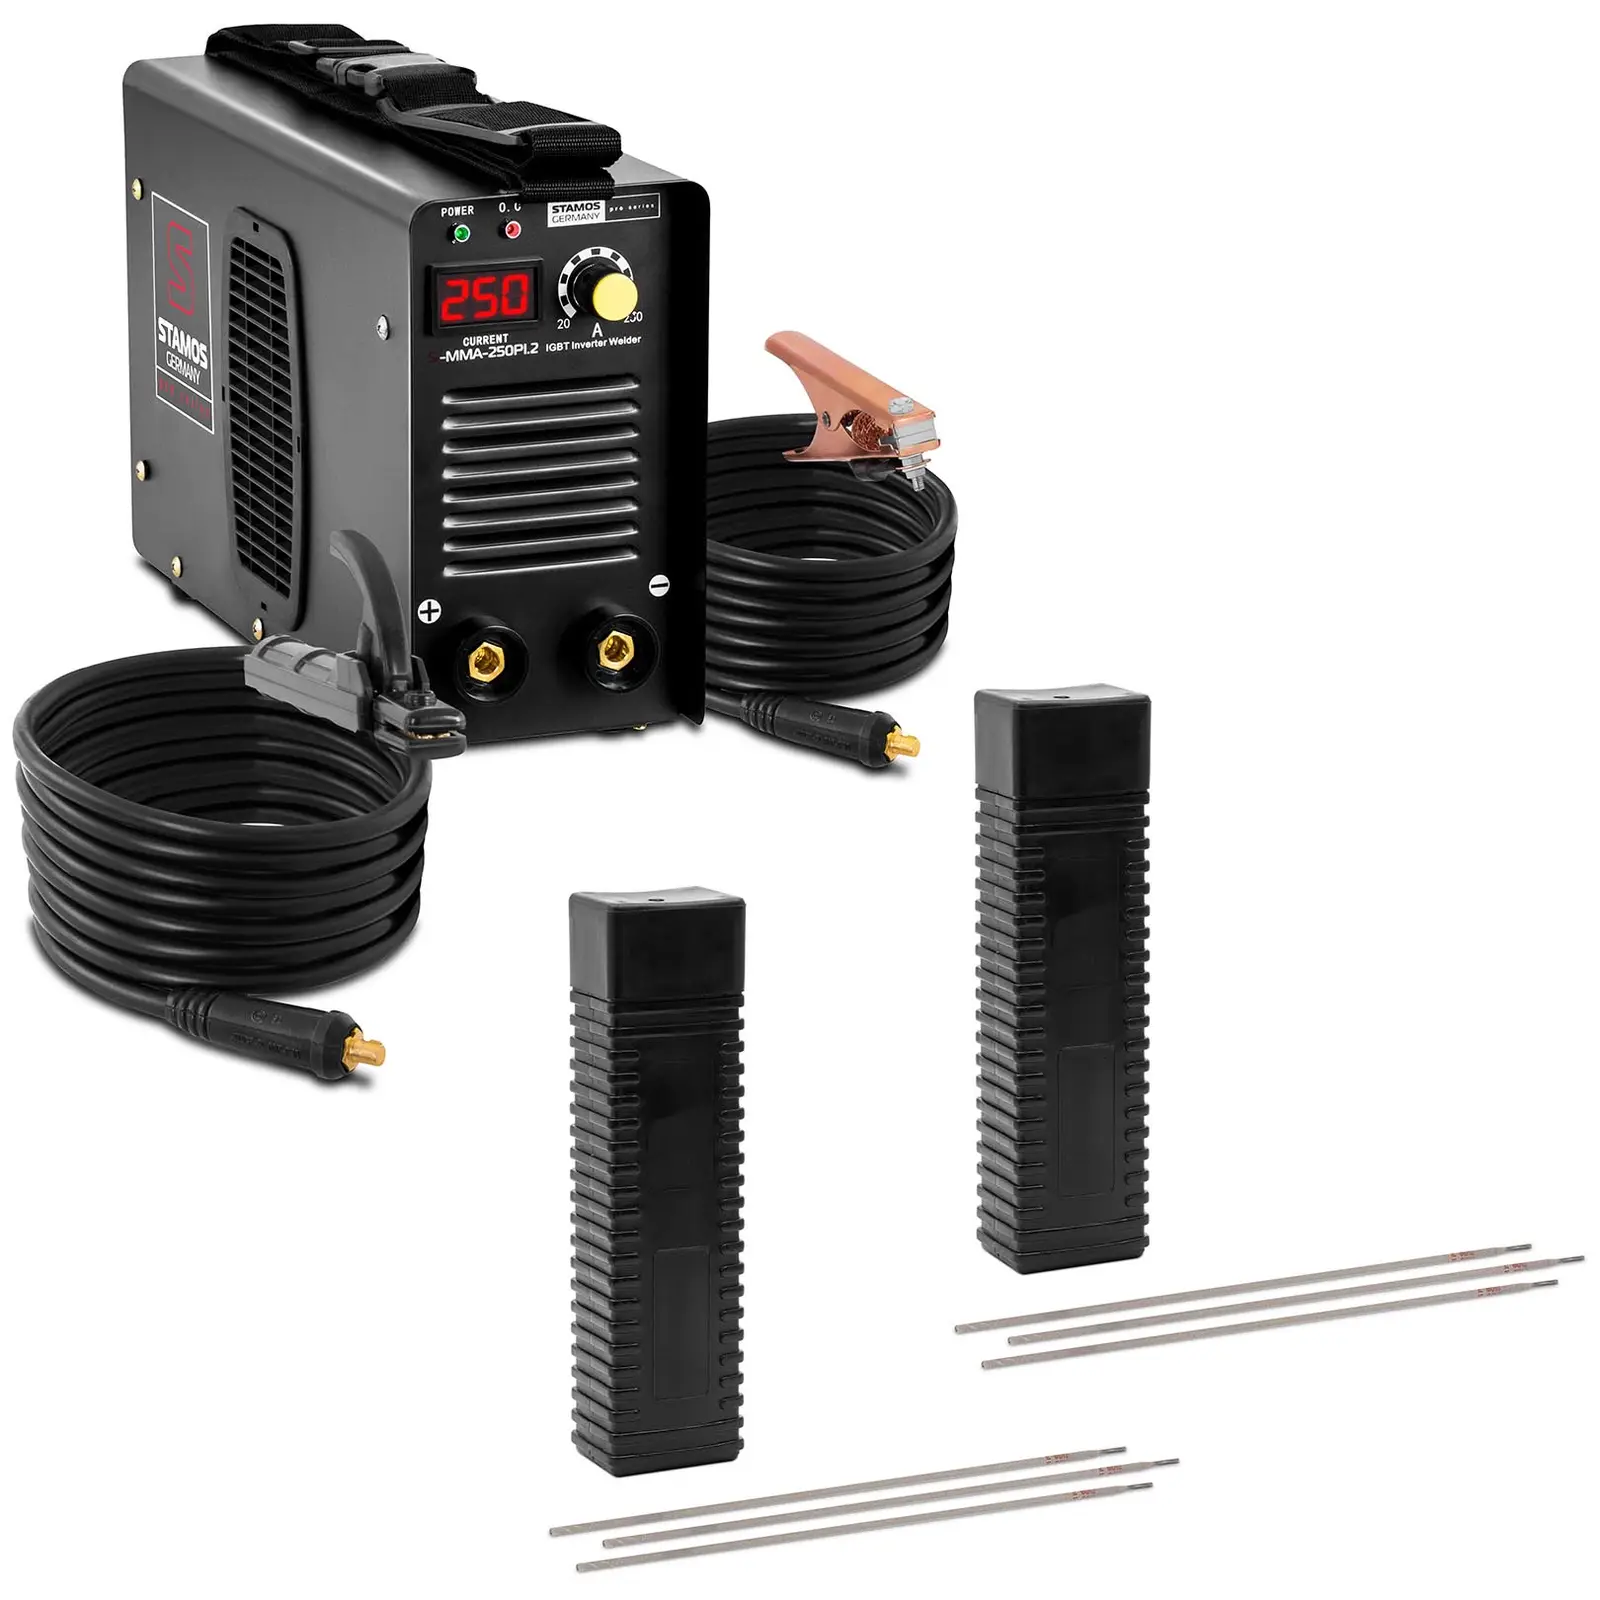 Svařovací souprava Svařovací elektrody - 250 A - 8 m kabel - 60 % pracovní cyklus - Elektrody E6013 - Rutilcelulóza - Ø 3,2 x 350 mm - 2 x 5 kg